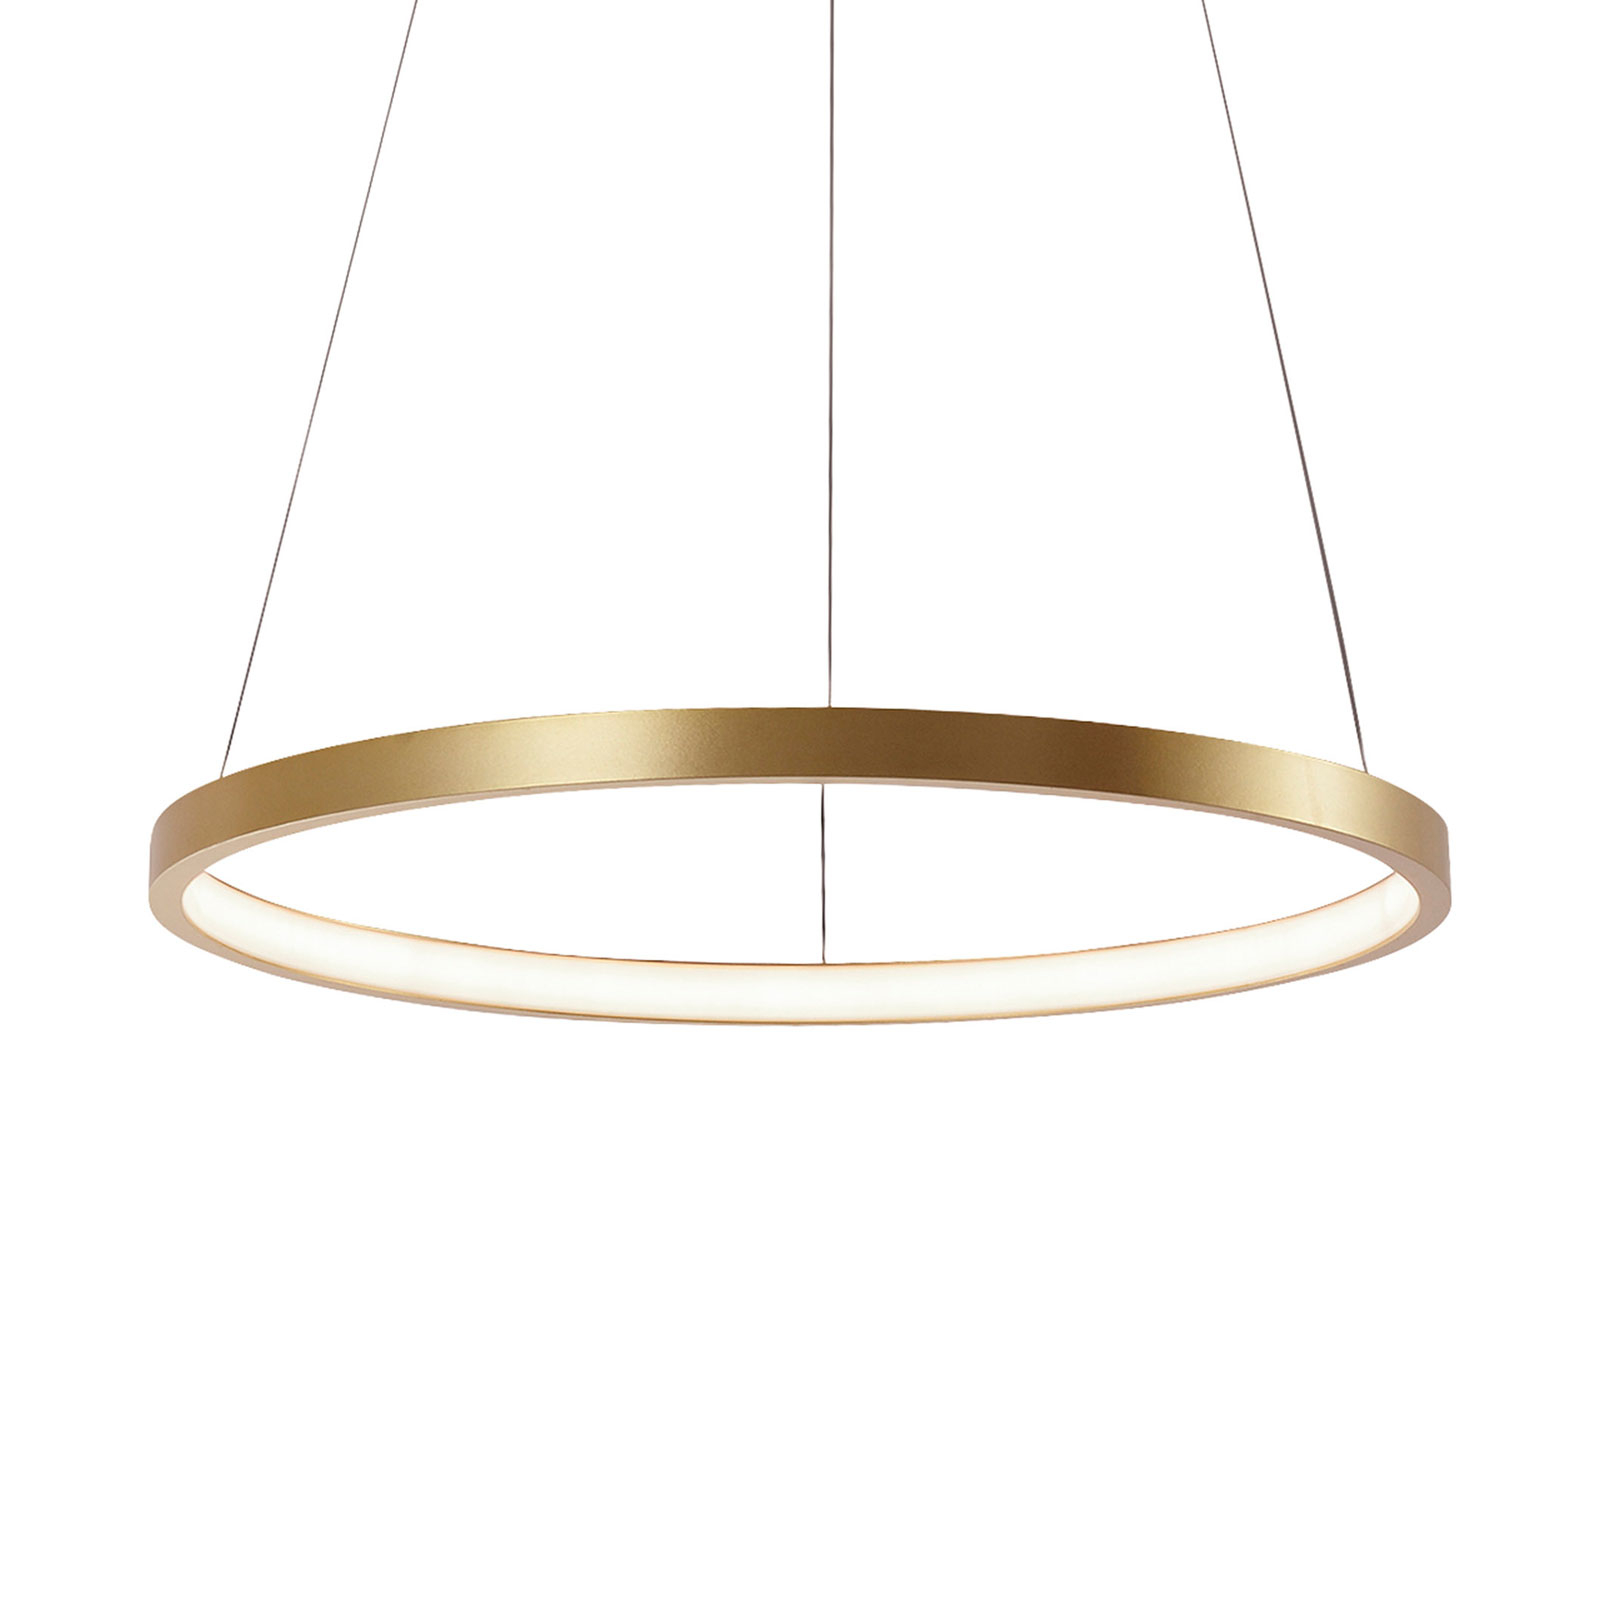 rand bovenstaand Visser LED hanglamp Circle, goud, Ø 39 cm | Lampen24.nl